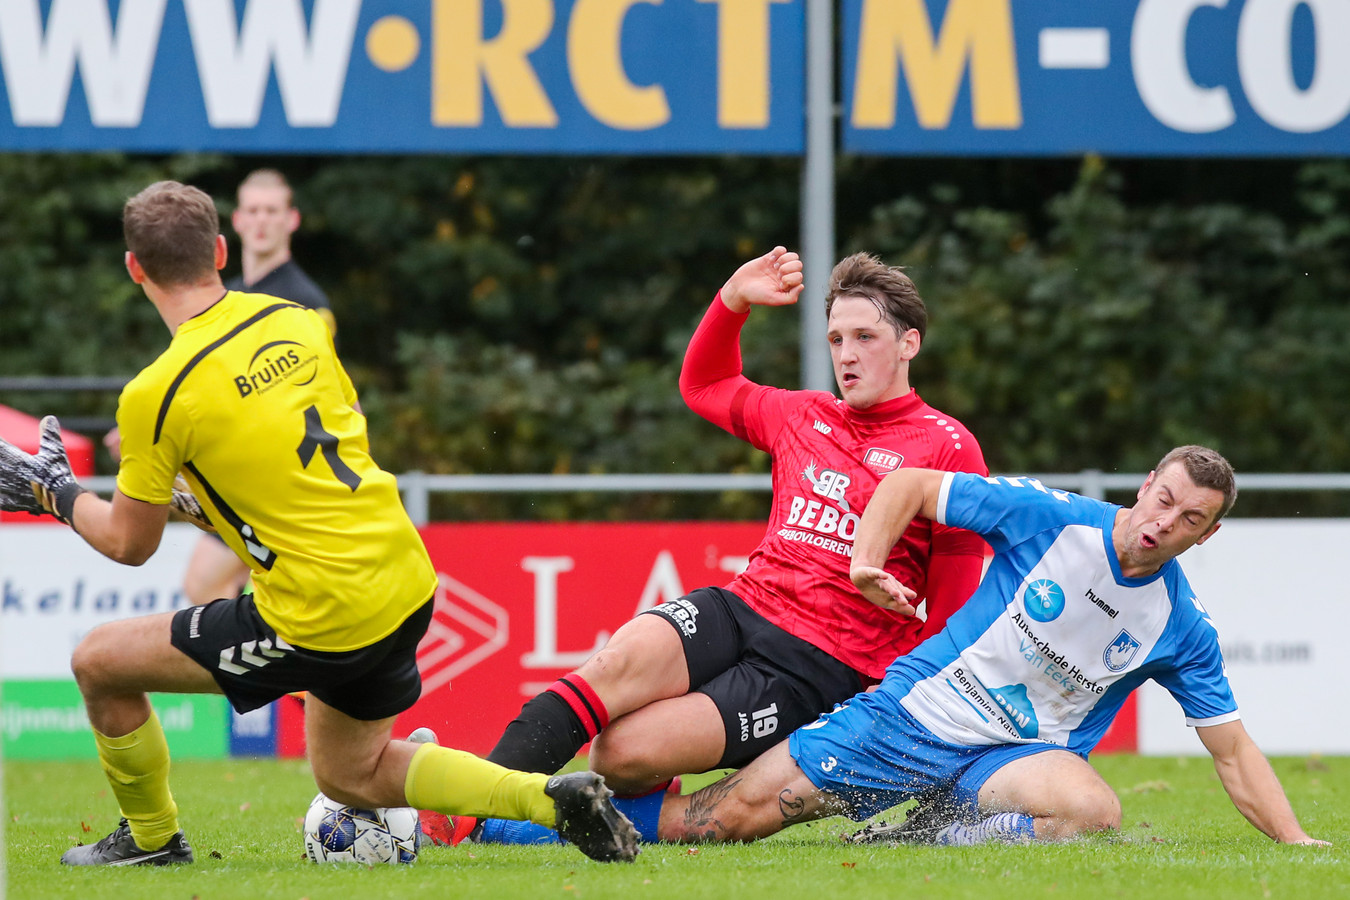 De hoofdklasse, waarin onder meer DETO Twenterand zit, verdwijnt in het plan voor de nieuwe voetbalpiramide en maakt plaats voor de vierde divisie.